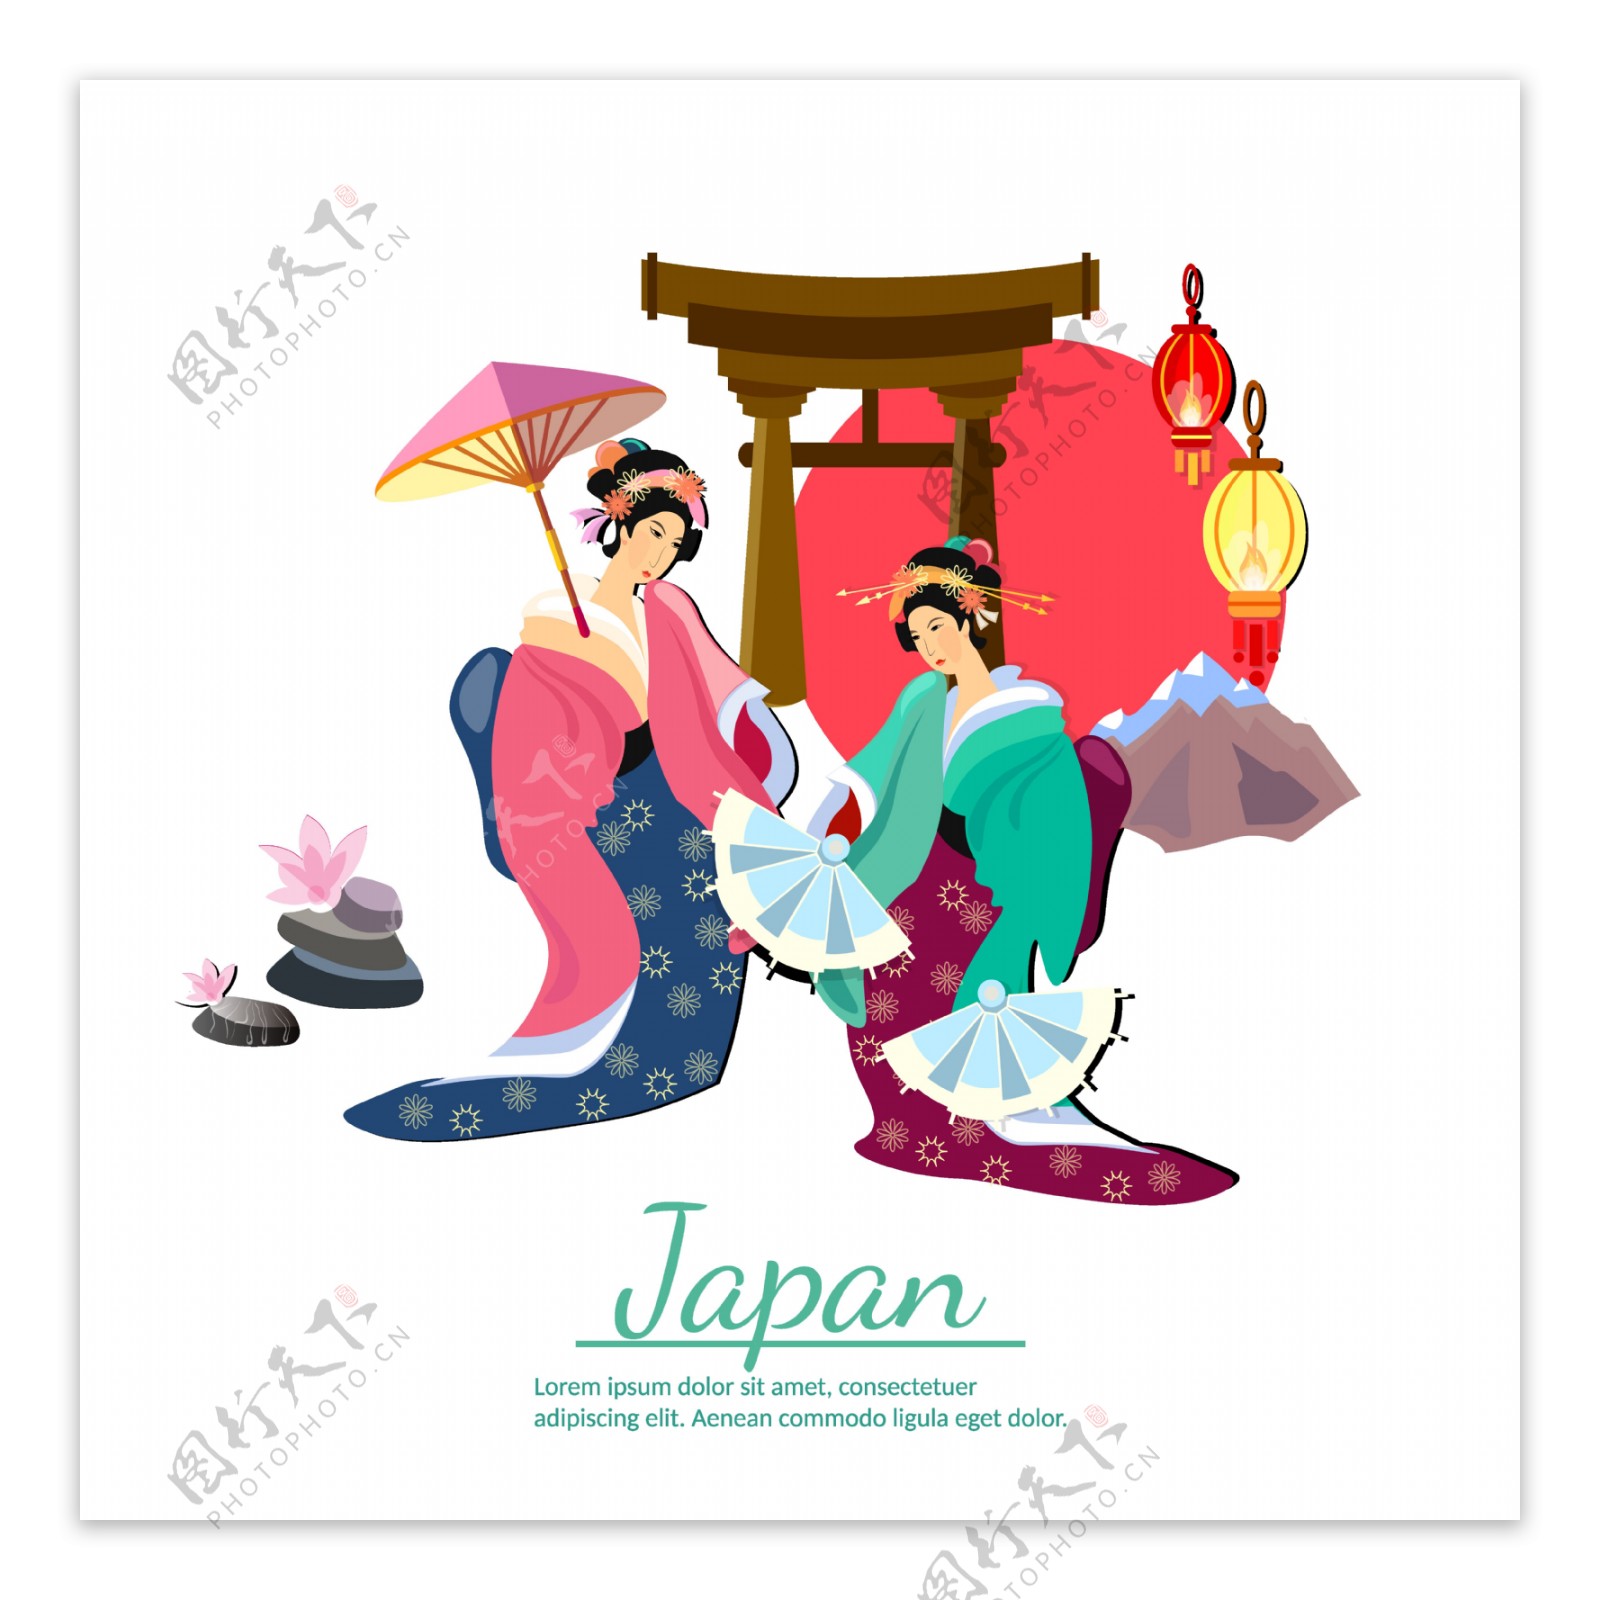 简约手绘灯笼日本旅游装饰元素